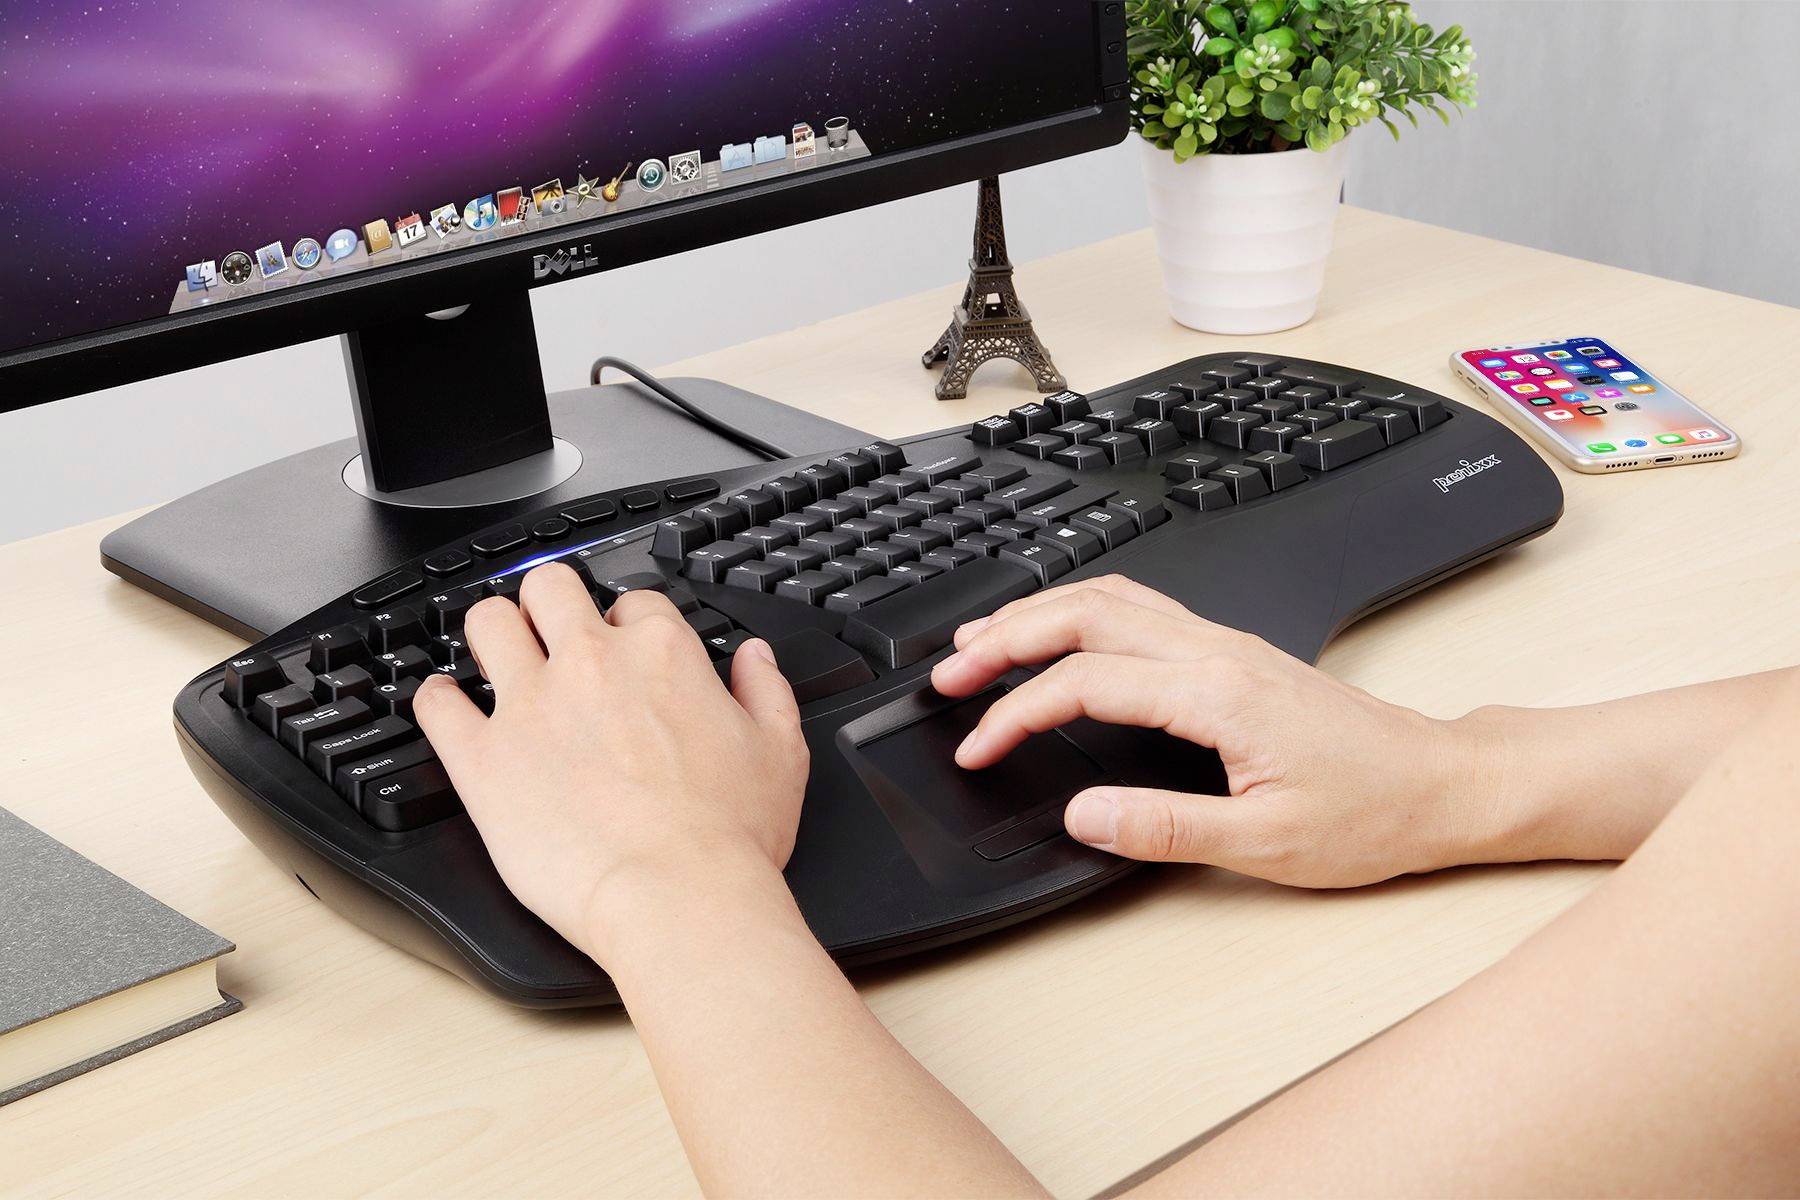 surface ergonomic keyboard black